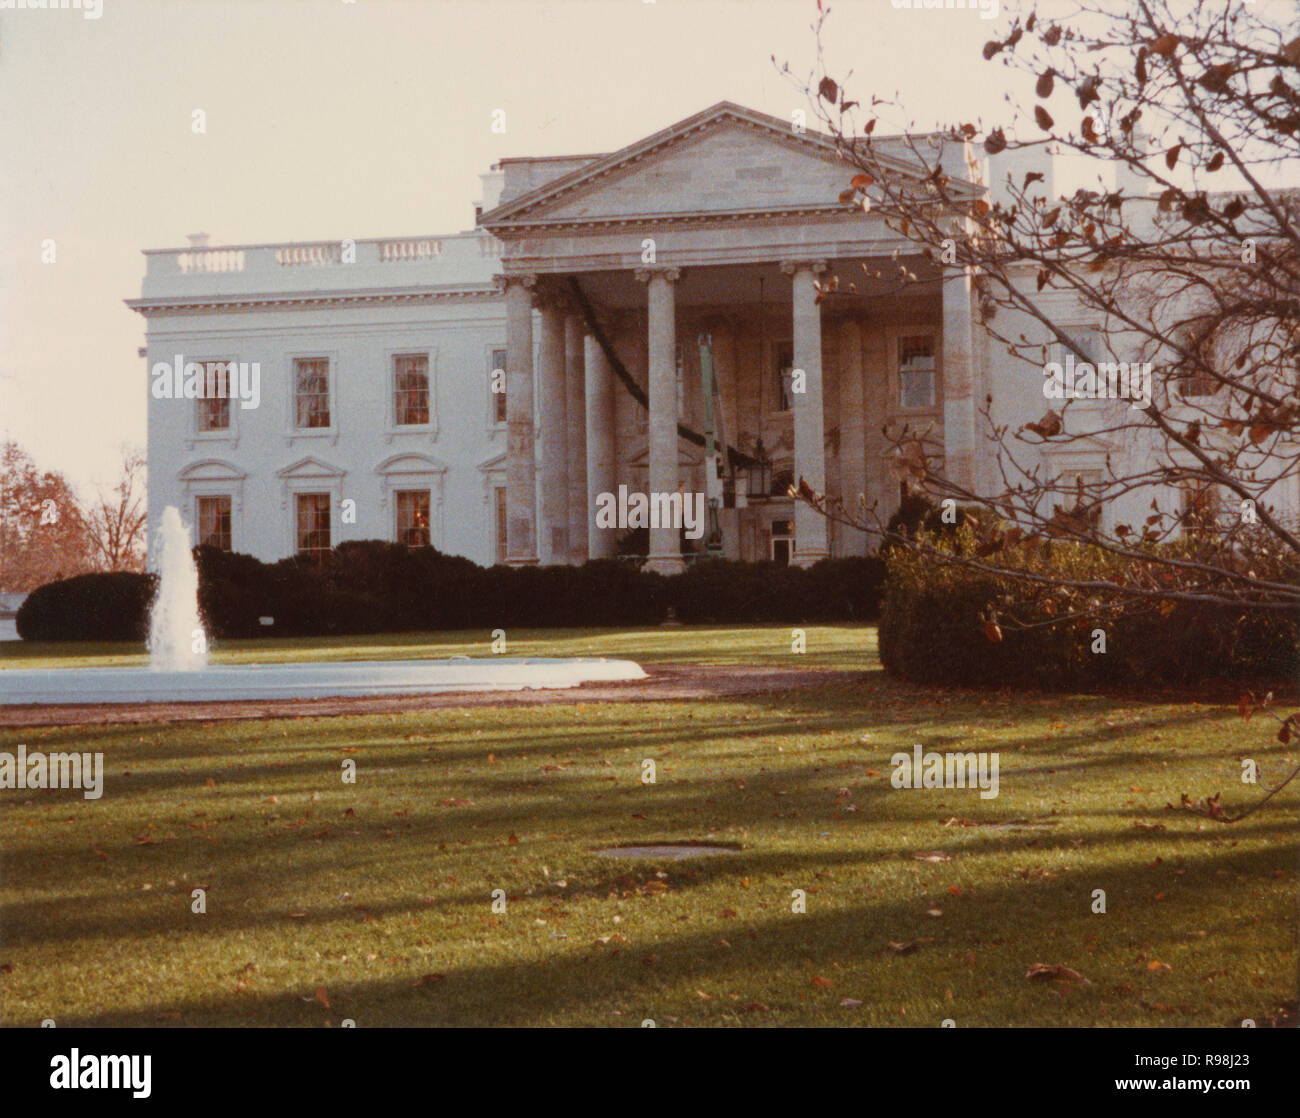 Jahrgang Februar 1985 Foto, Blick auf das Weiße Haus in Washington, DC, mit einer Schaufel Stapler entfernen der Urlaub Girlande. Quelle: original Foto Stockfoto